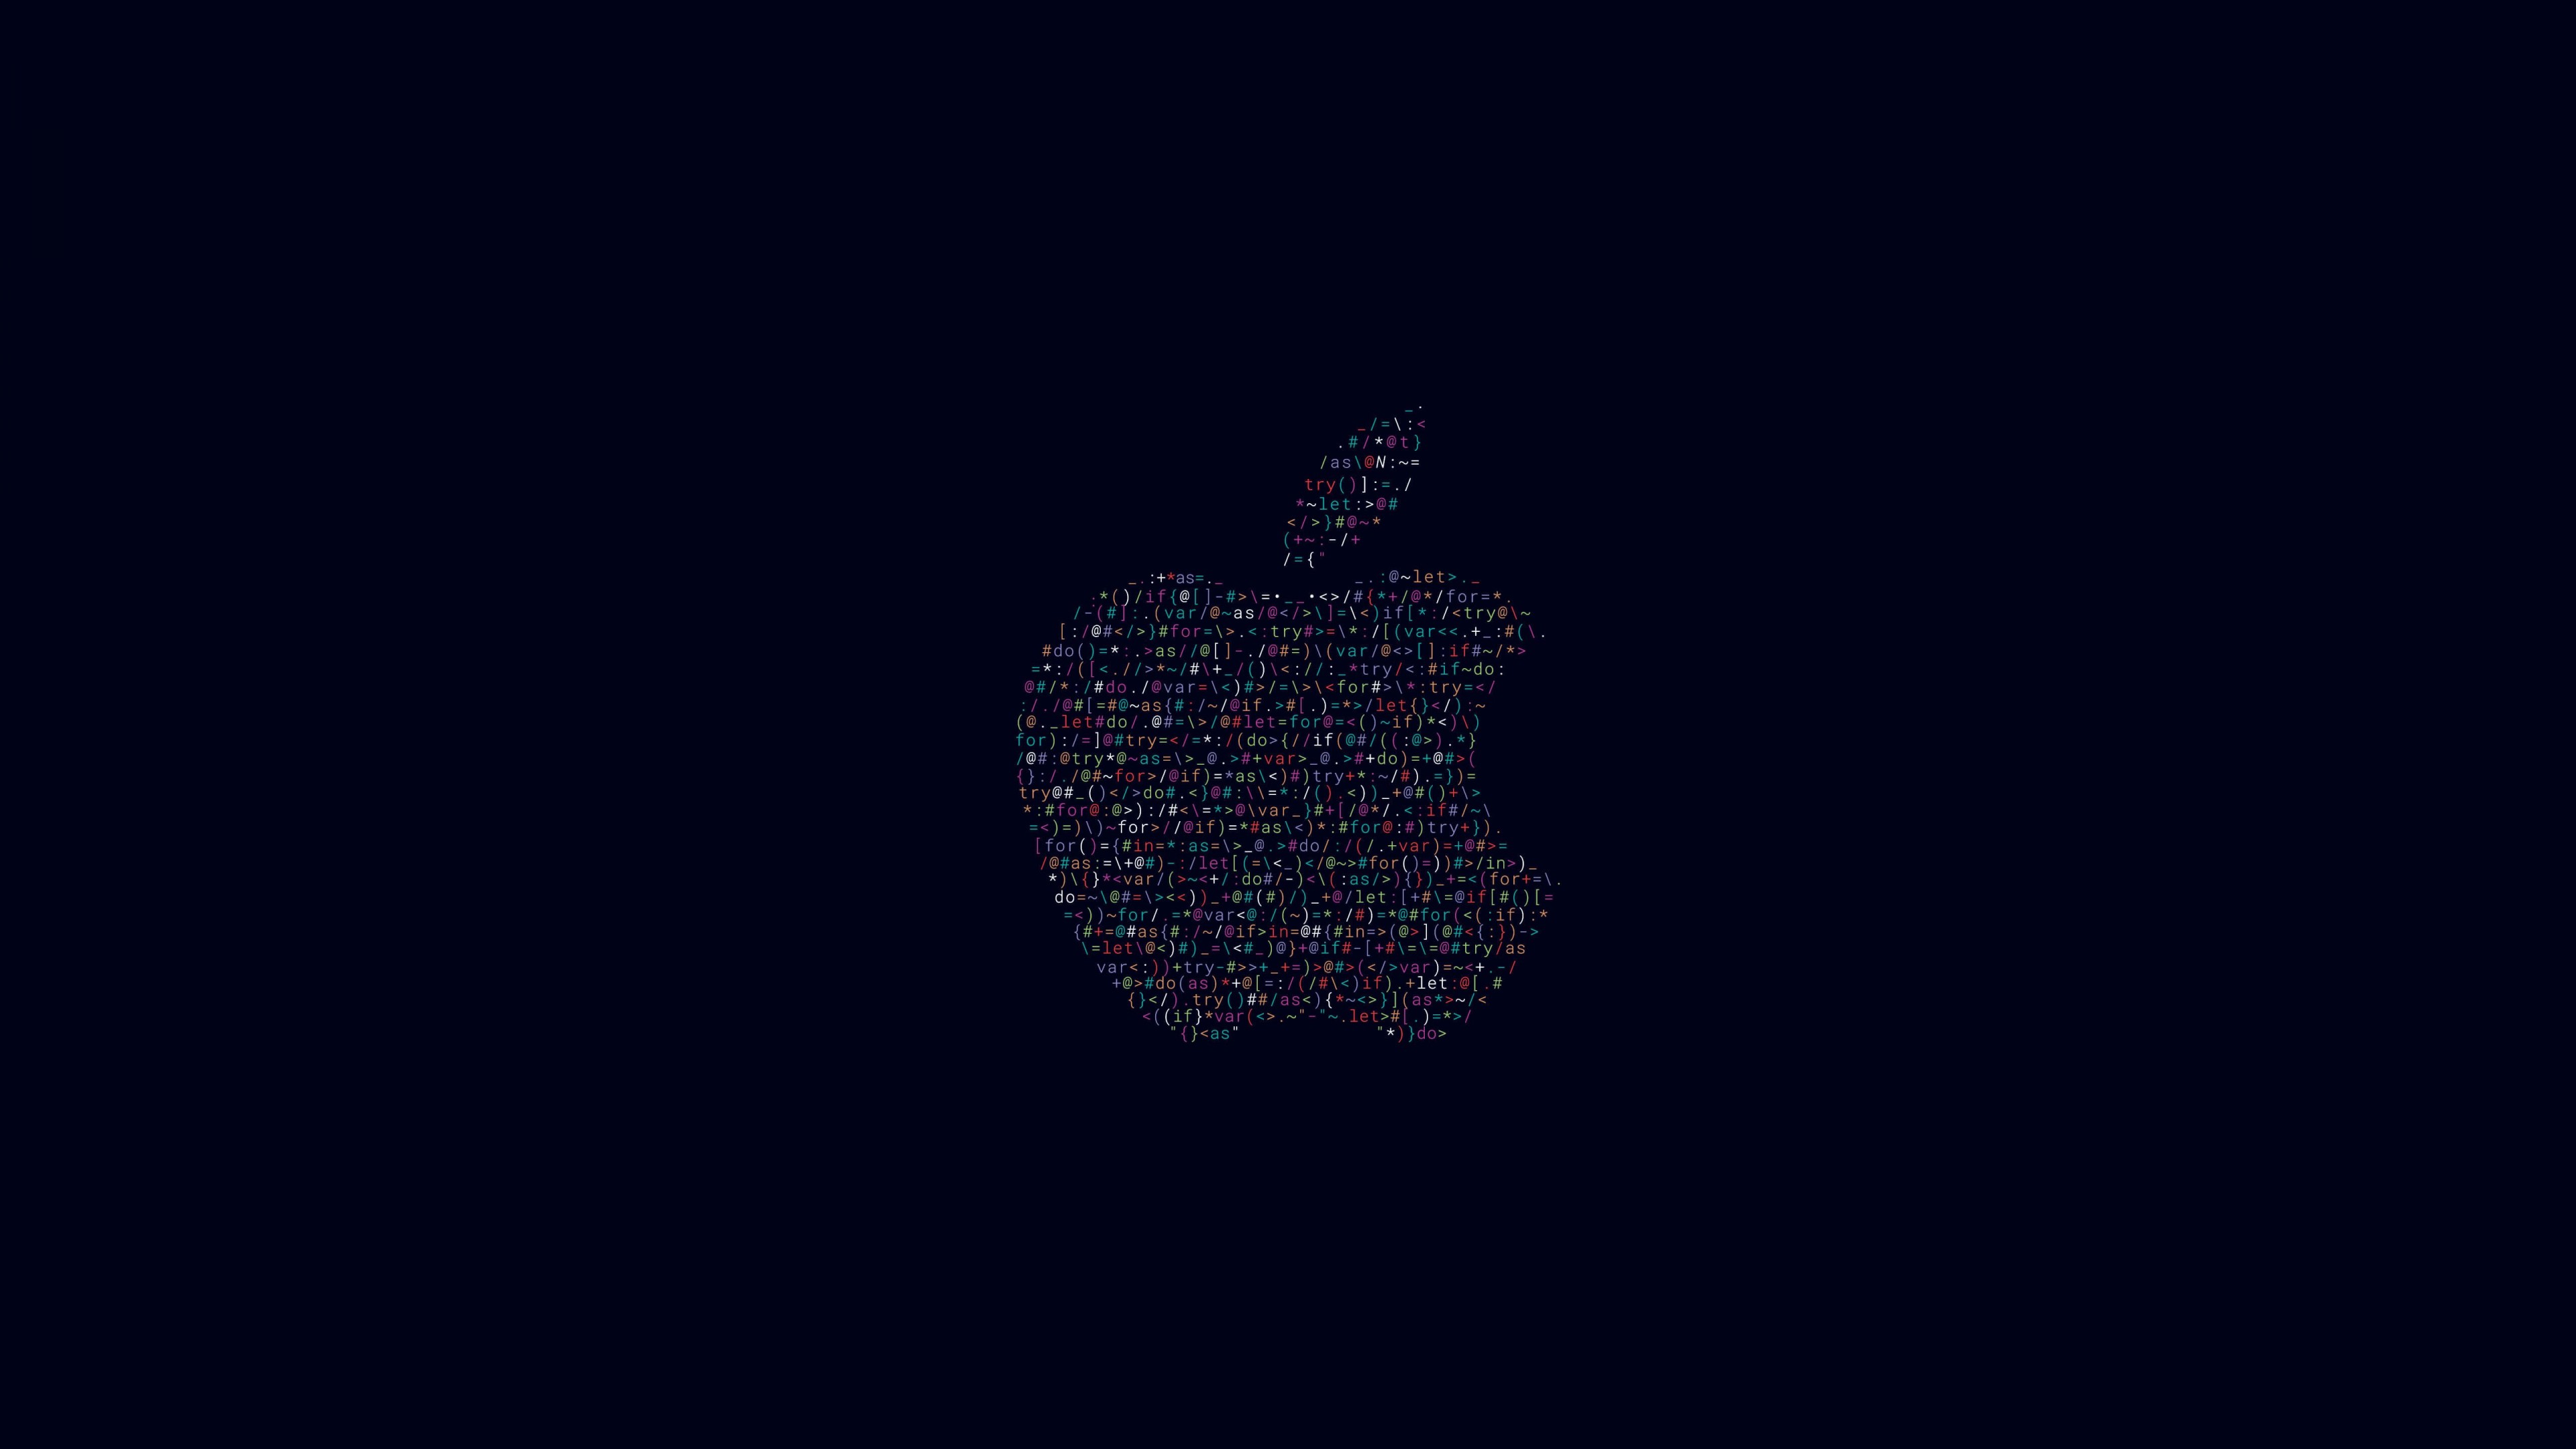 Apple WWDC 2016 Wallpaper for Desktop 4K 3840x2160